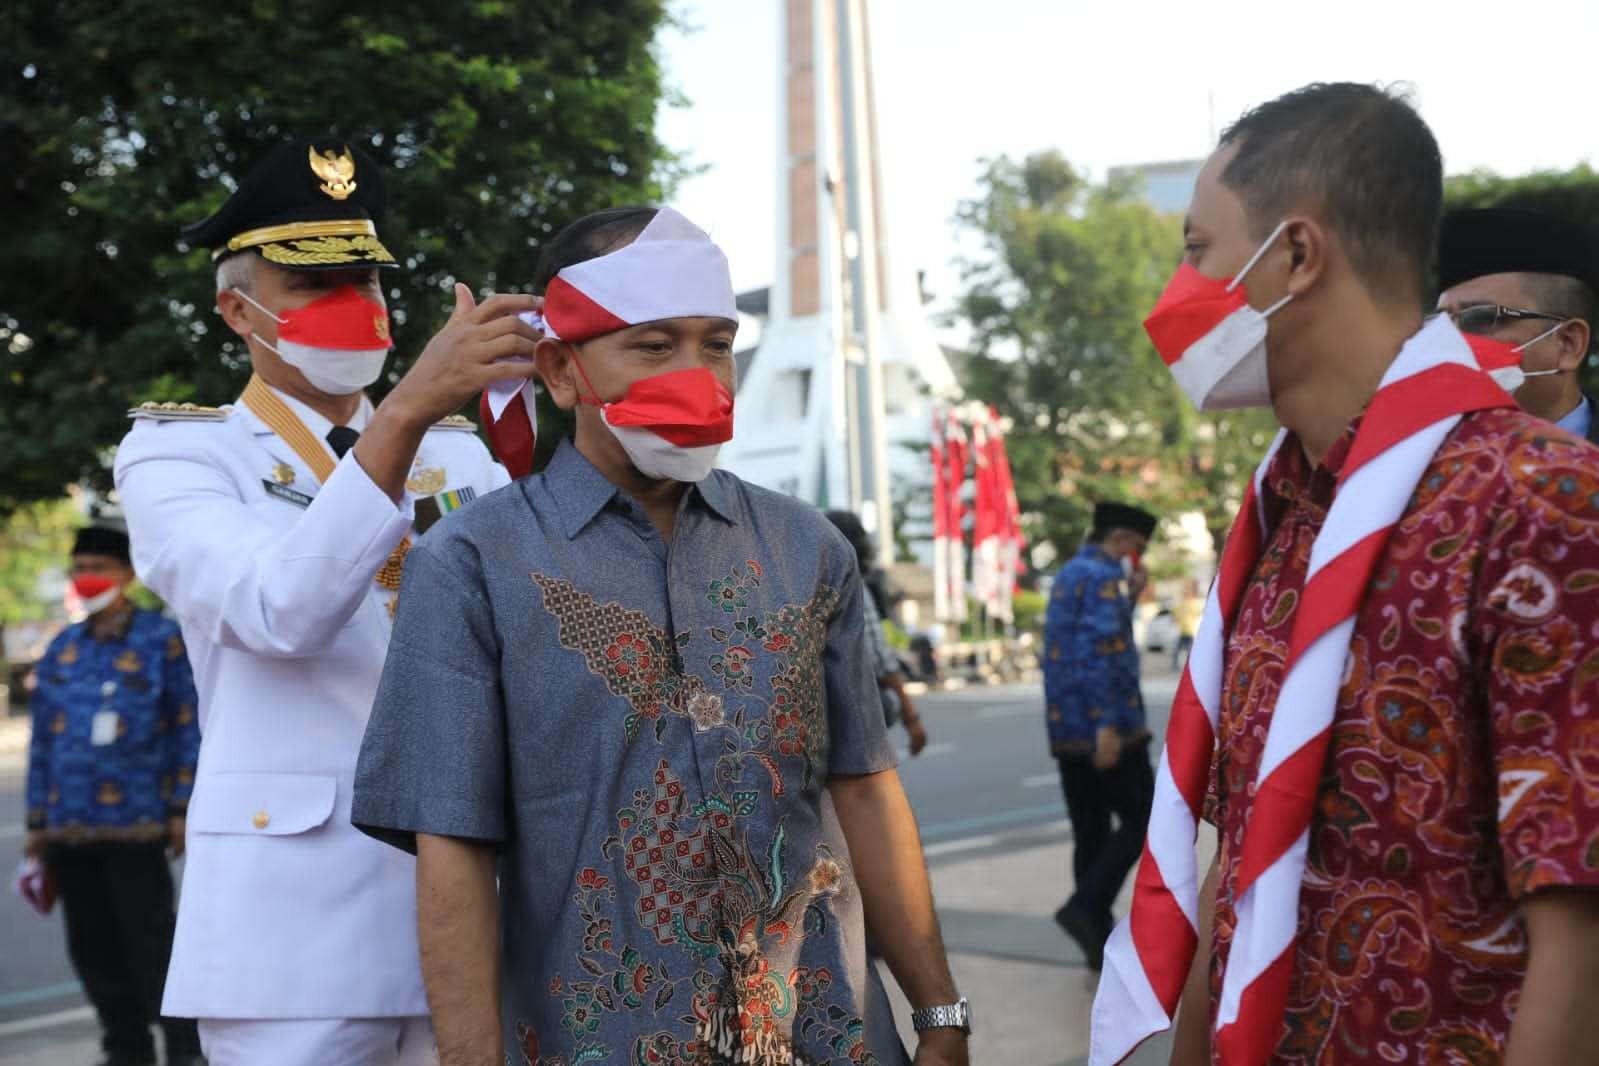 Gubernur Jawa Tengah Ganjar Pranowo yang  bertindak sebagai inspektur upacara secara khusus menyematkan hasduk merah putih di kepala Joko Priyono, salah seorang eks napiter. (Foto: Dokumentasi Pemprov Jateng)